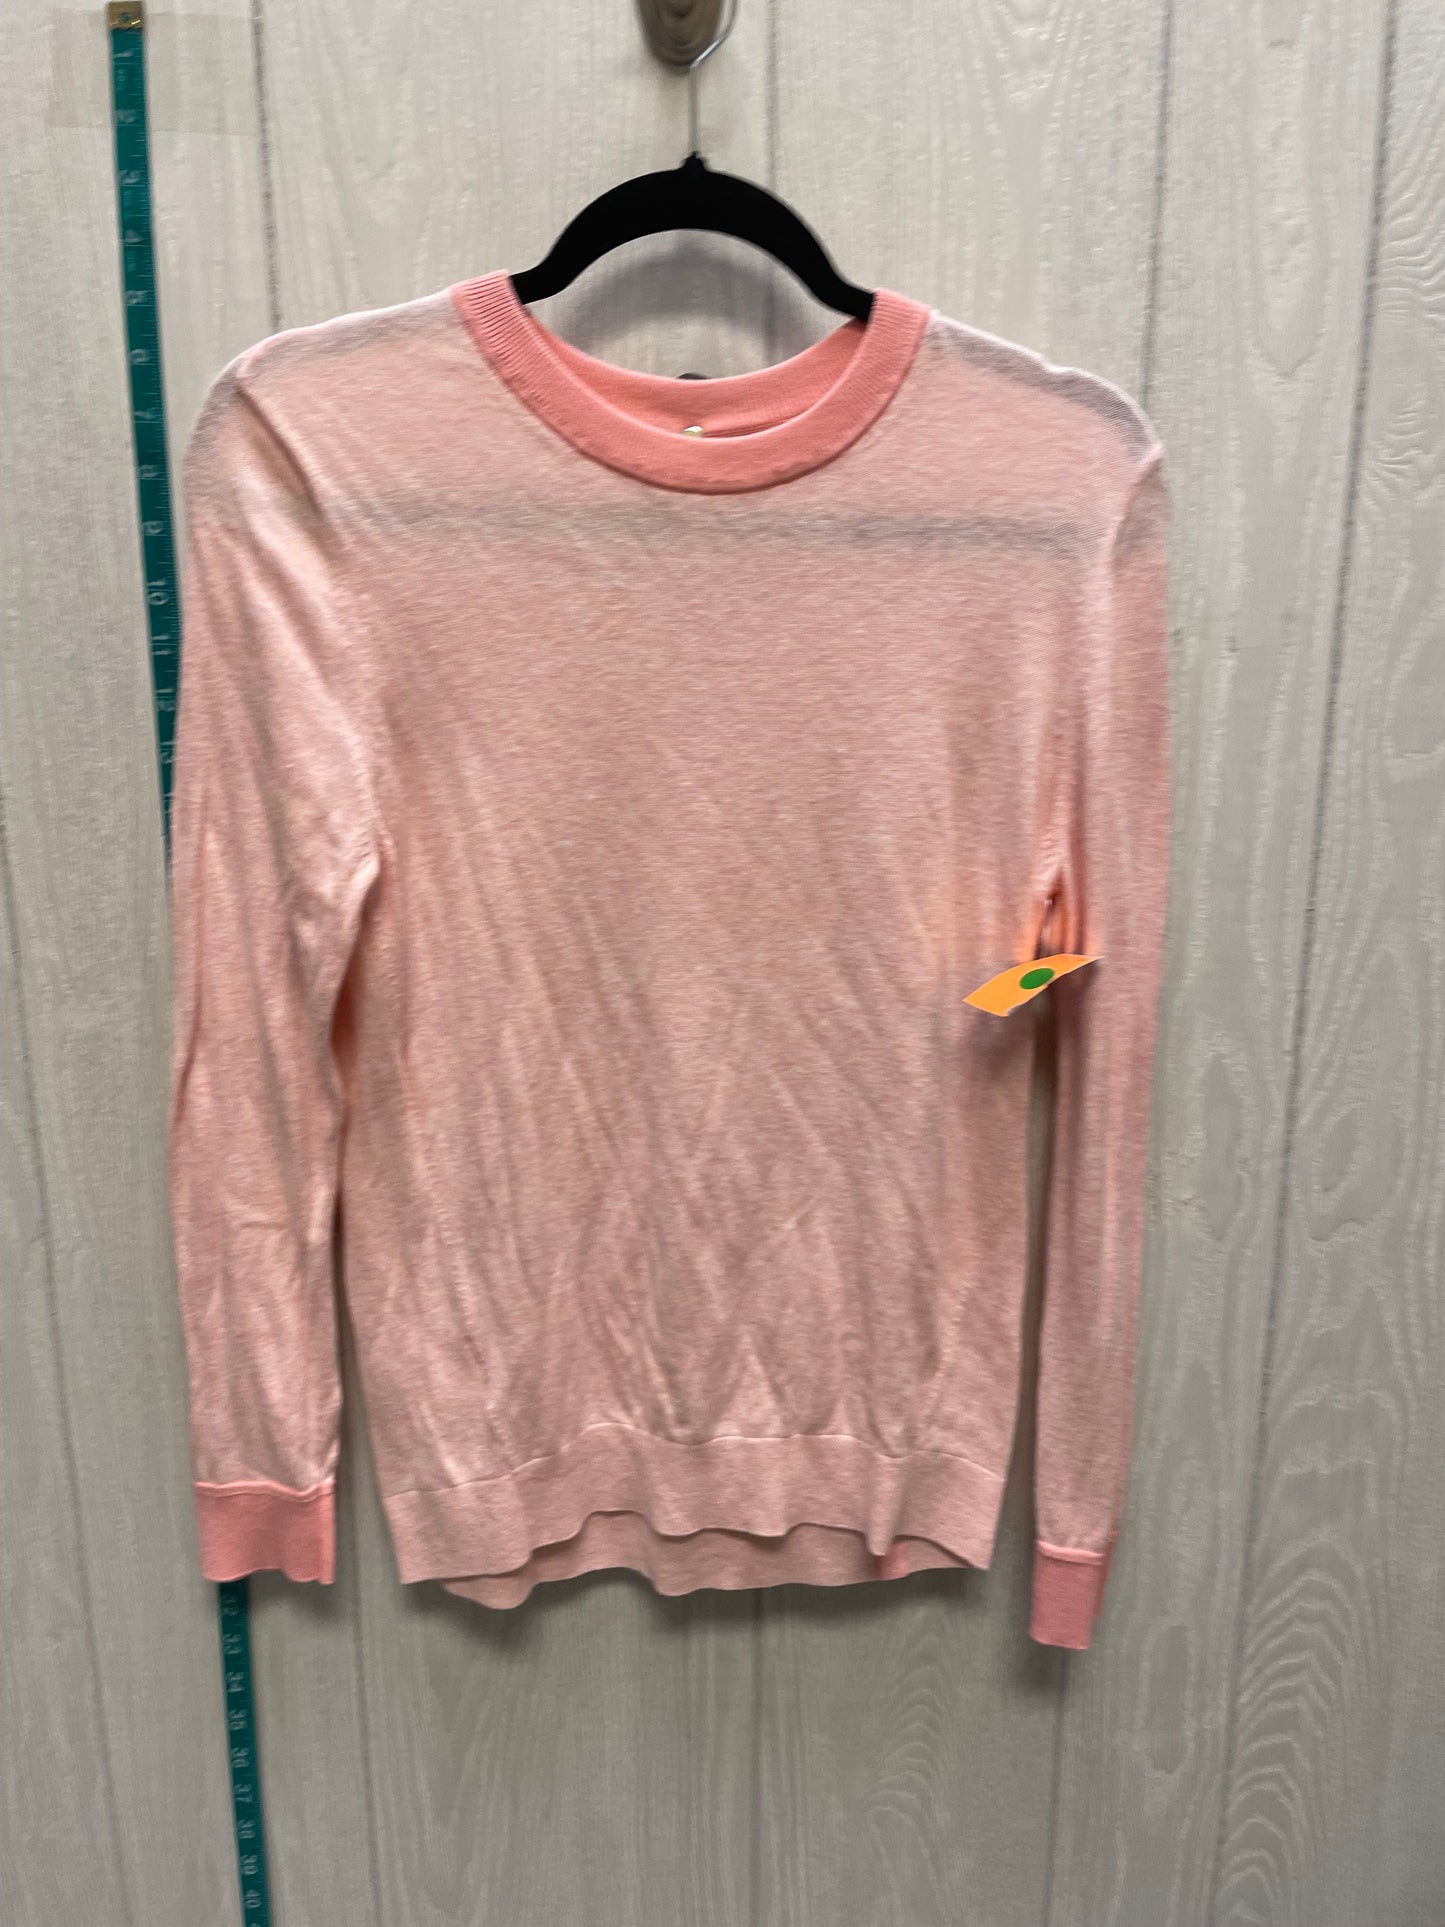 Orange & Pink Sweater Lululemon, Size S